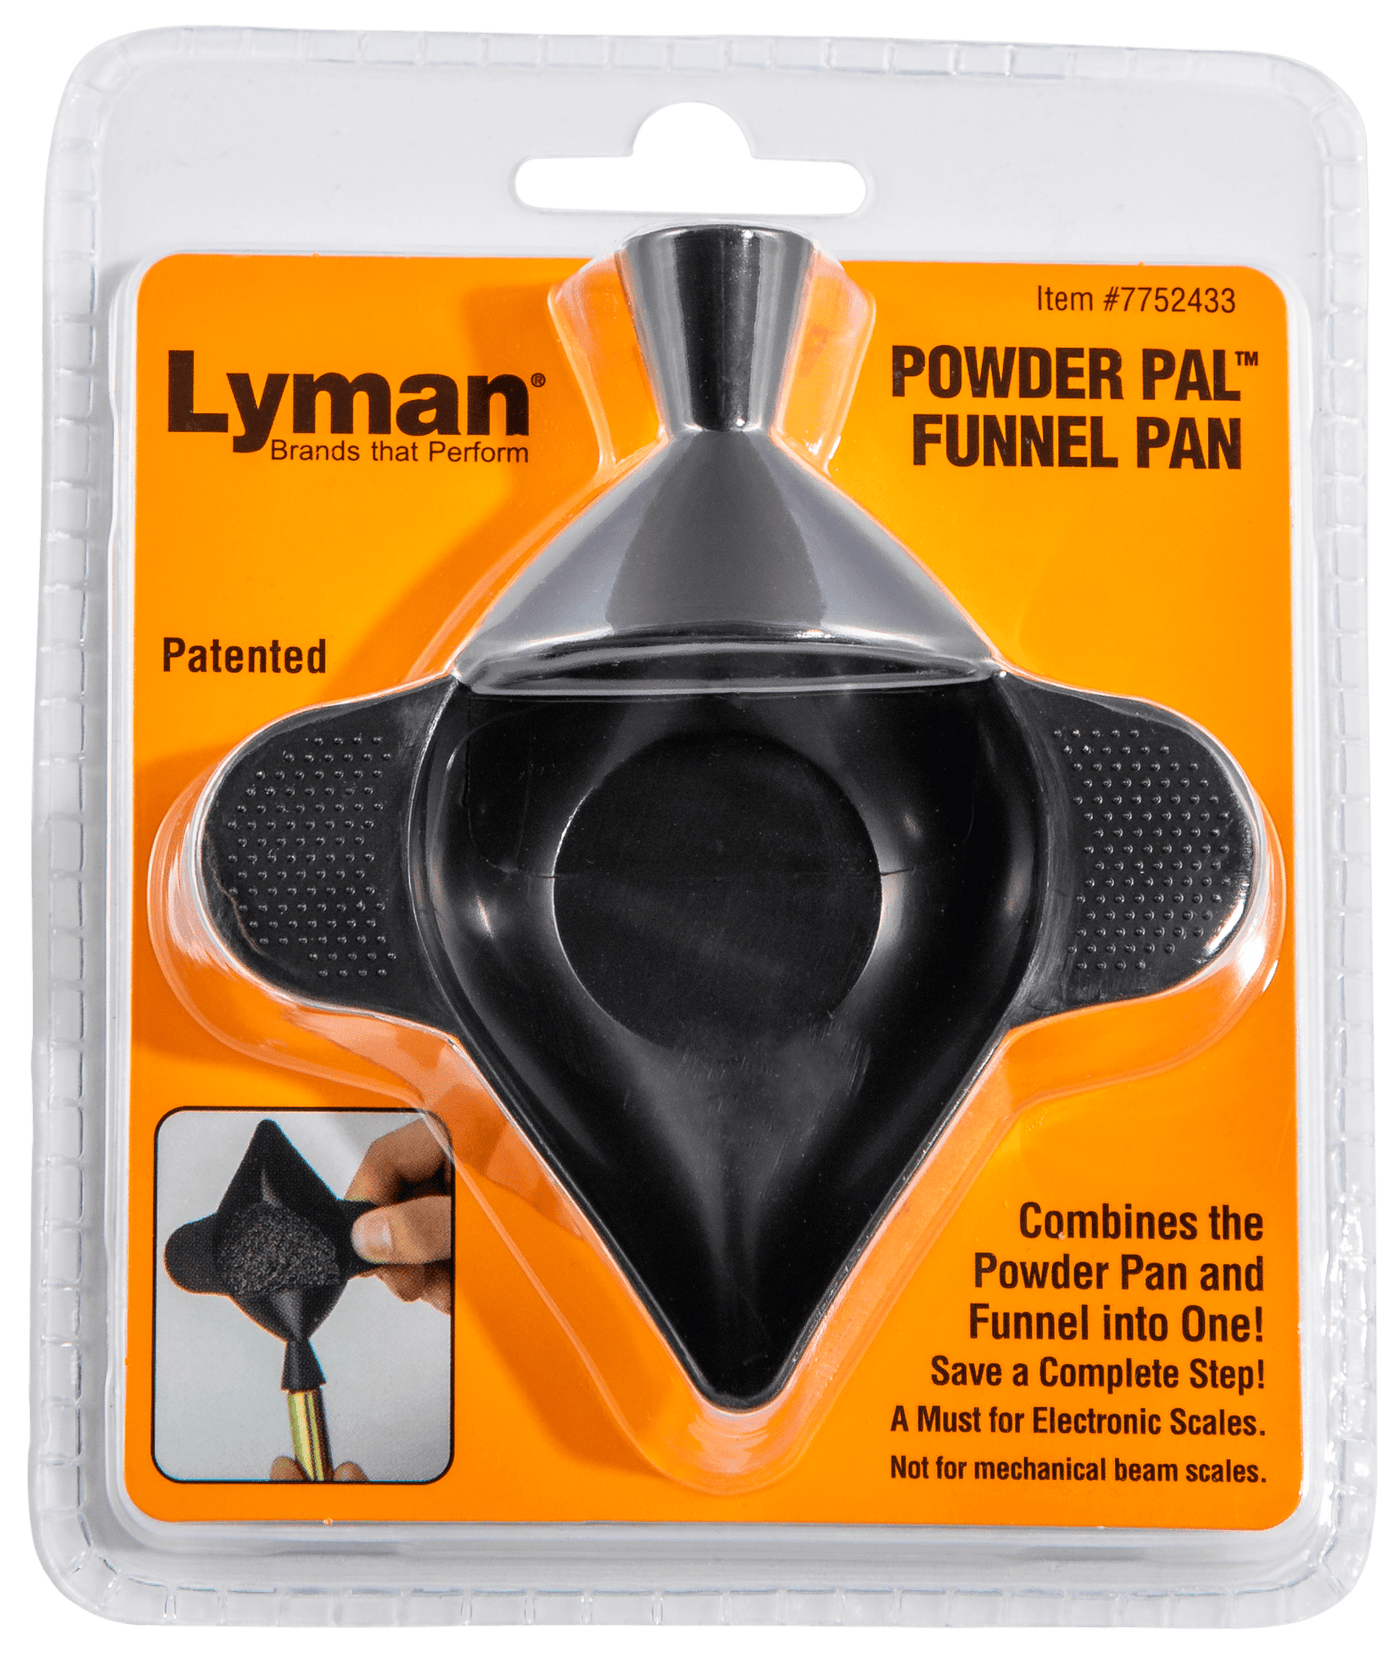 Lyman Lyman Powder Pal, Lym 7752433 Elec Scale Funnel Pan Reloading